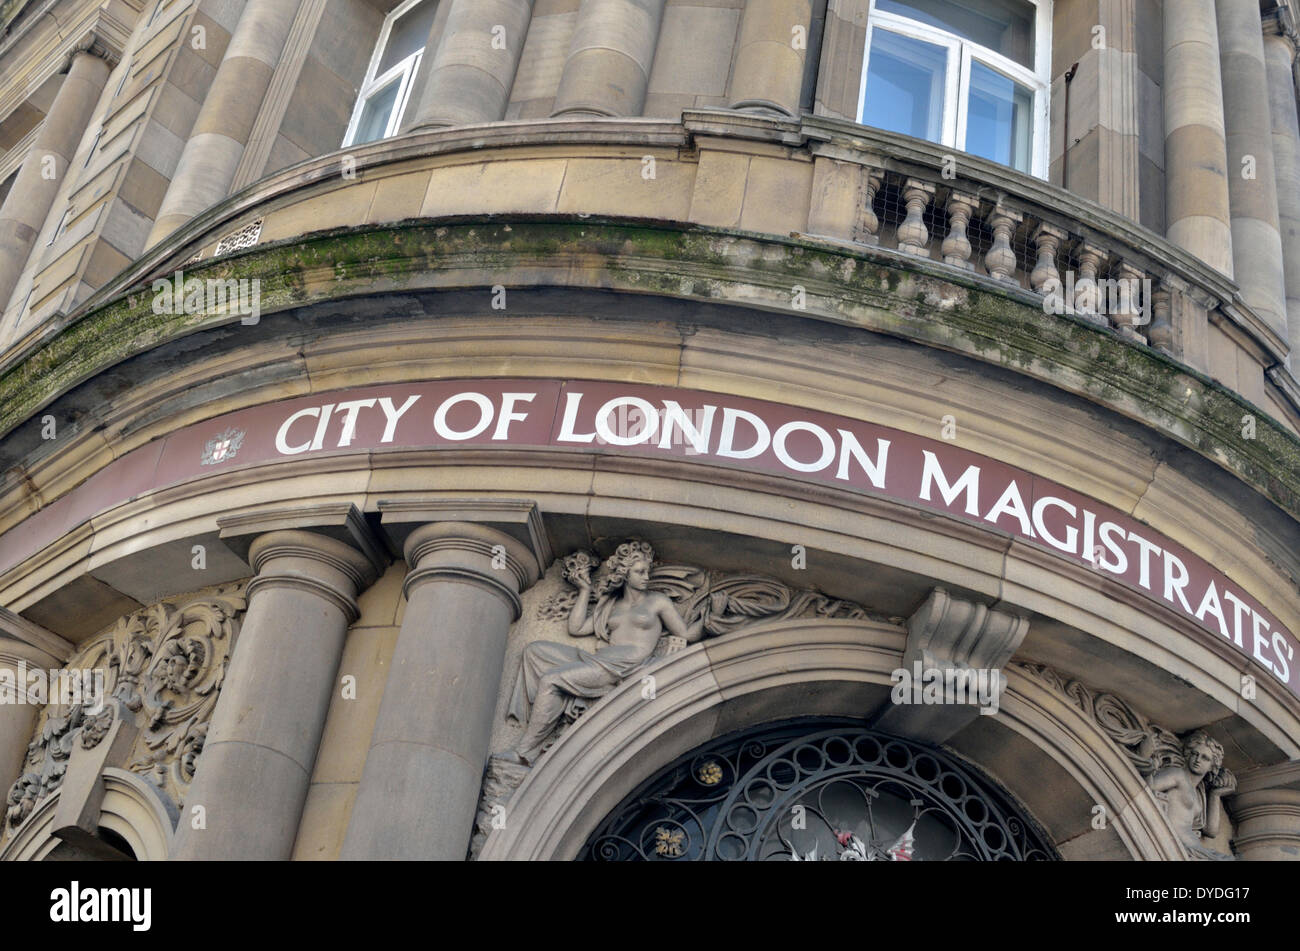 Ville de London Magistrates Court dans la rue de la reine Victoria. Banque D'Images